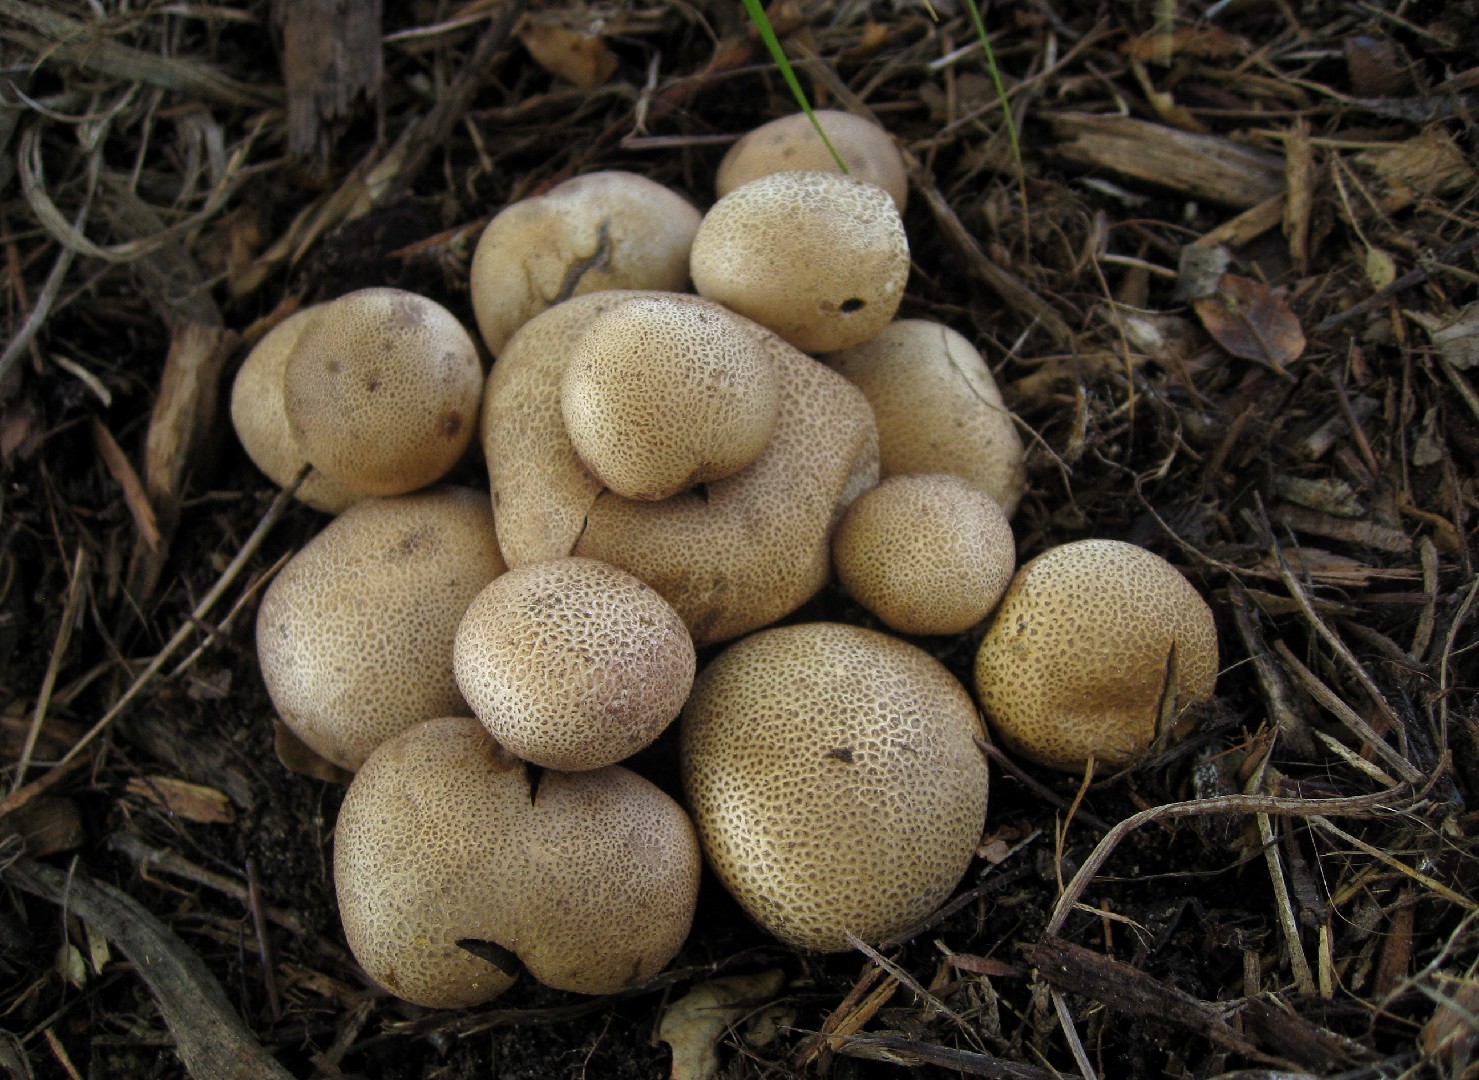 양파어리알버섯 (Scleroderma cepa)